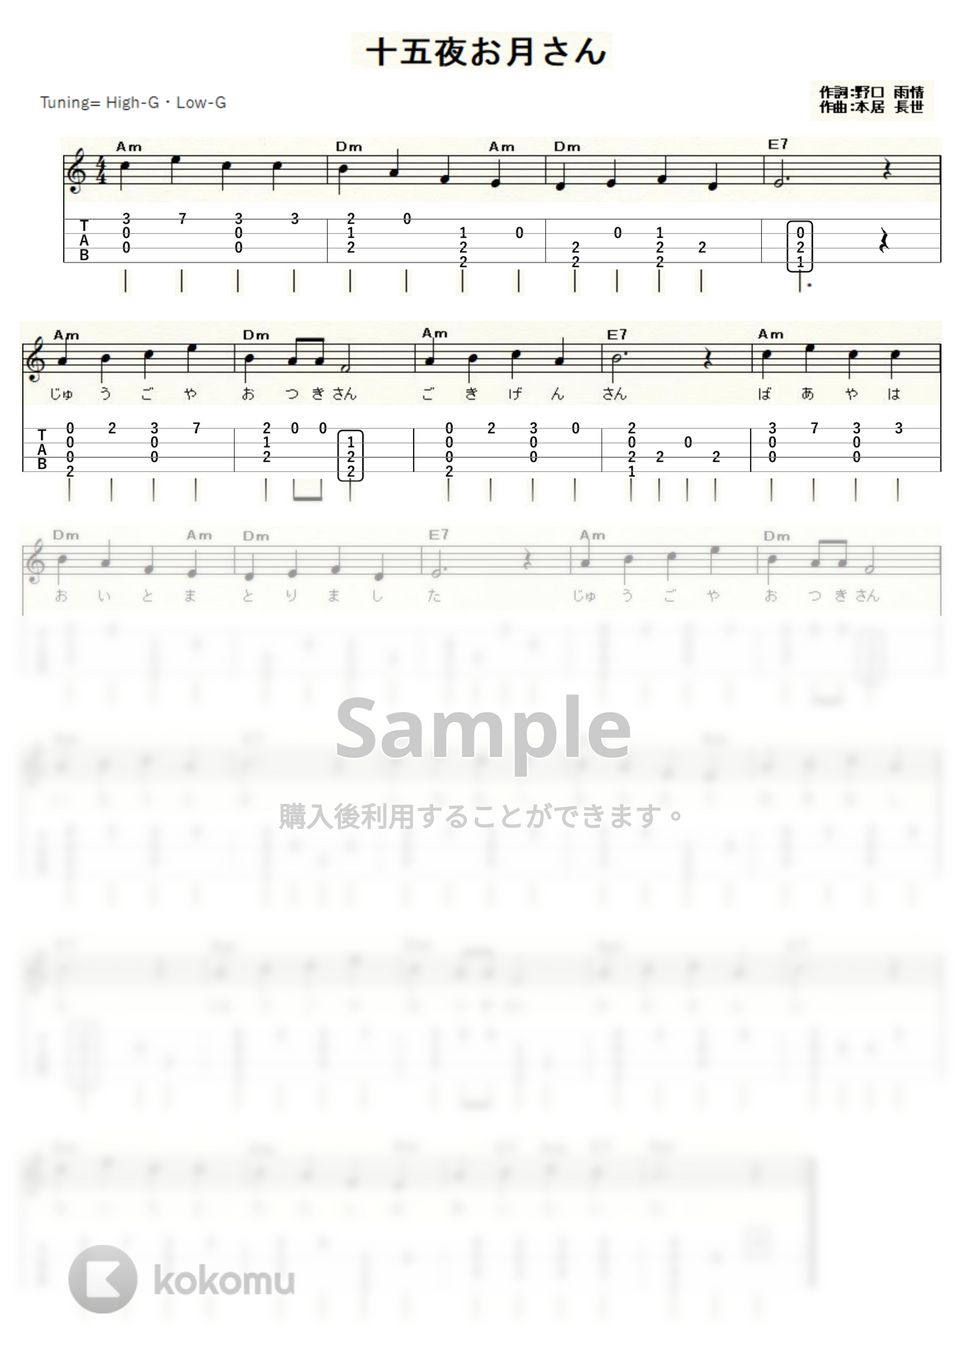 十五夜お月さん (ｳｸﾚﾚｿﾛ/High-G・Low-G/初級) by ukulelepapa